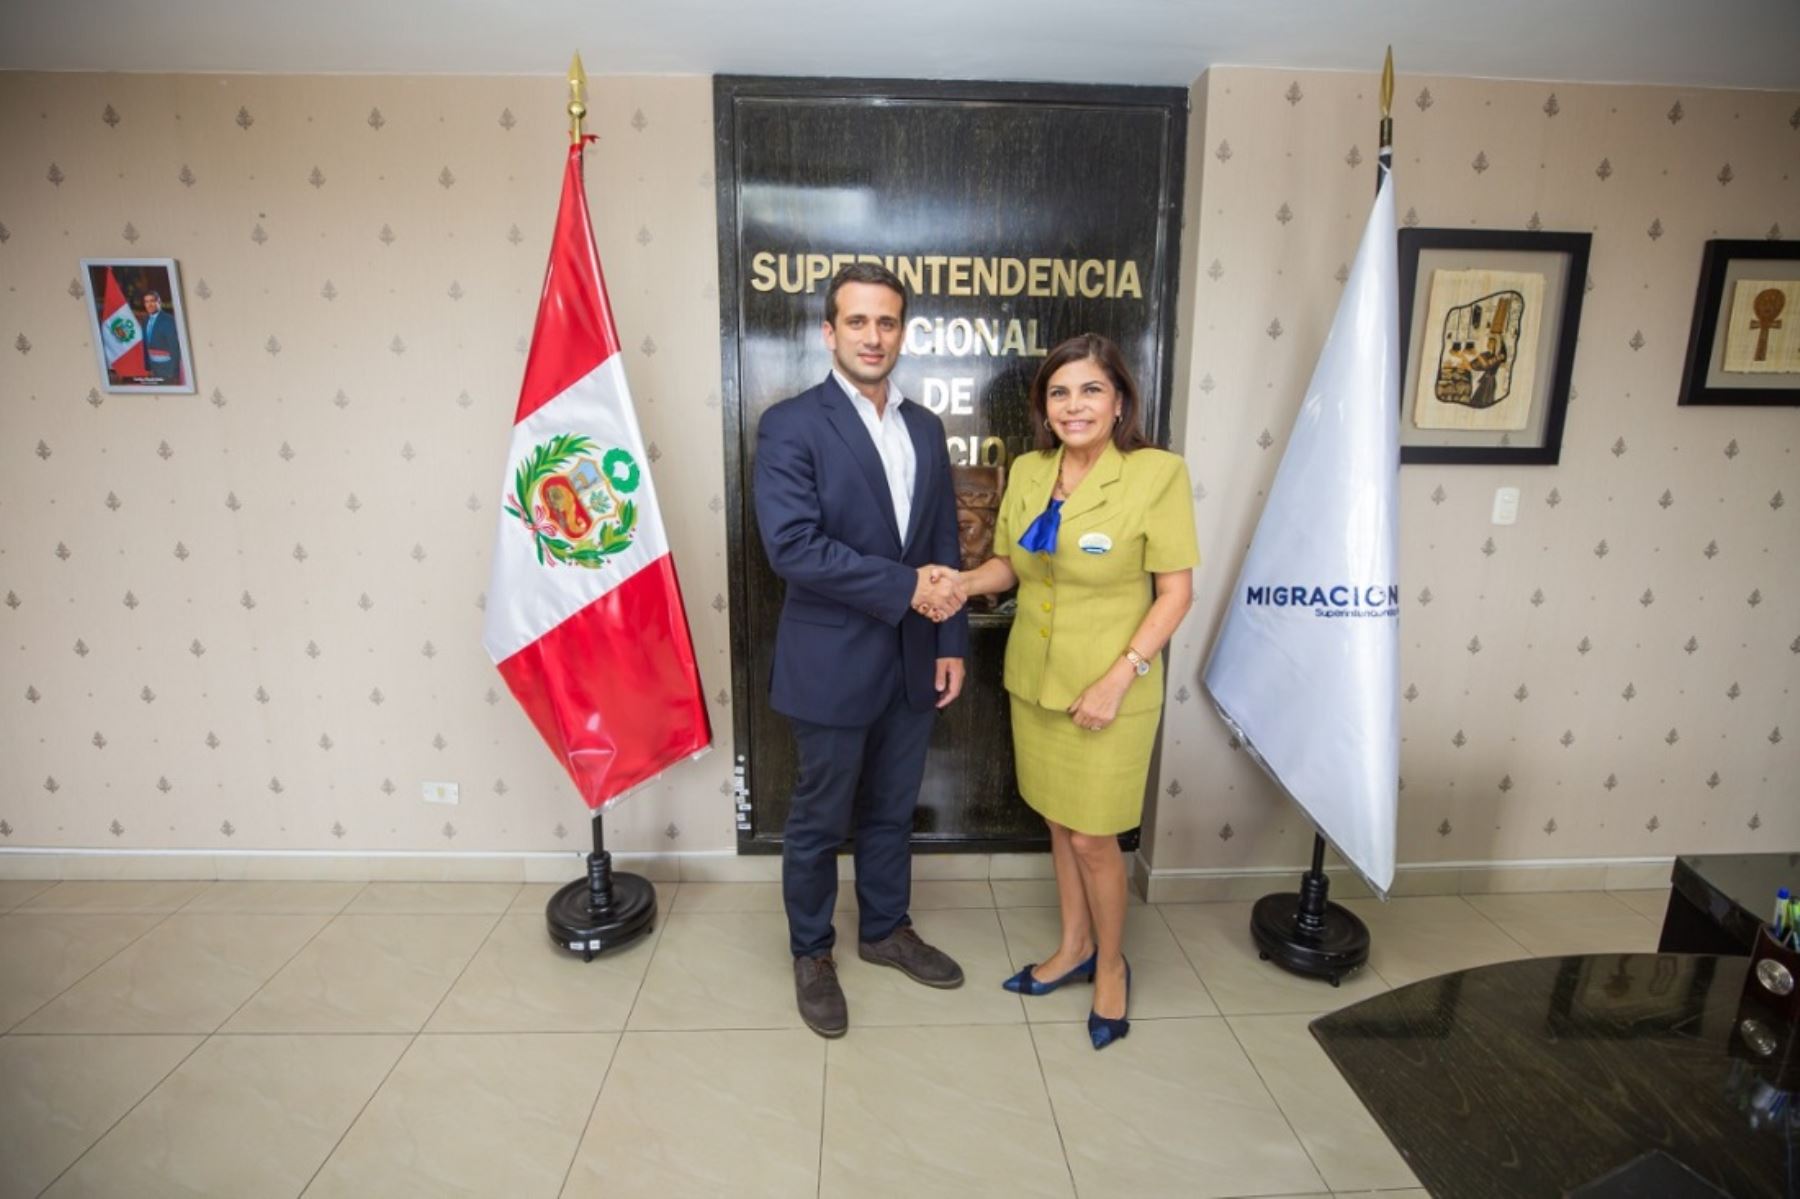 Representante diplomático de Perú en Venezuela, Carlos Scull, visitó hoy la sede de Migraciones y se reunió con Roxana del Águila, superintendenta de esta entidad.